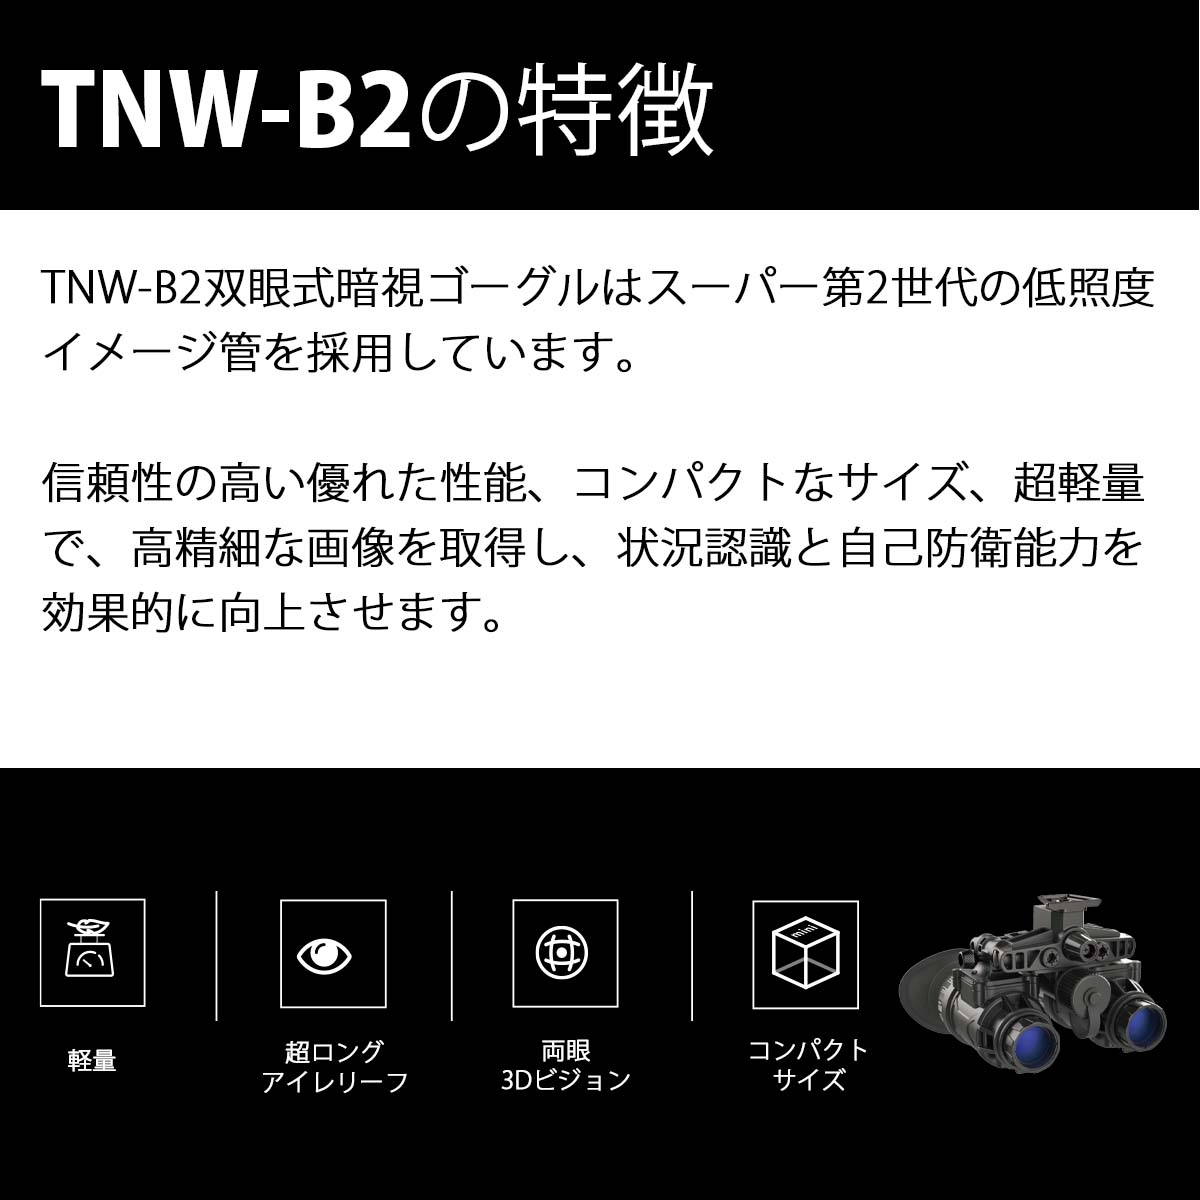 TNW-B2-G